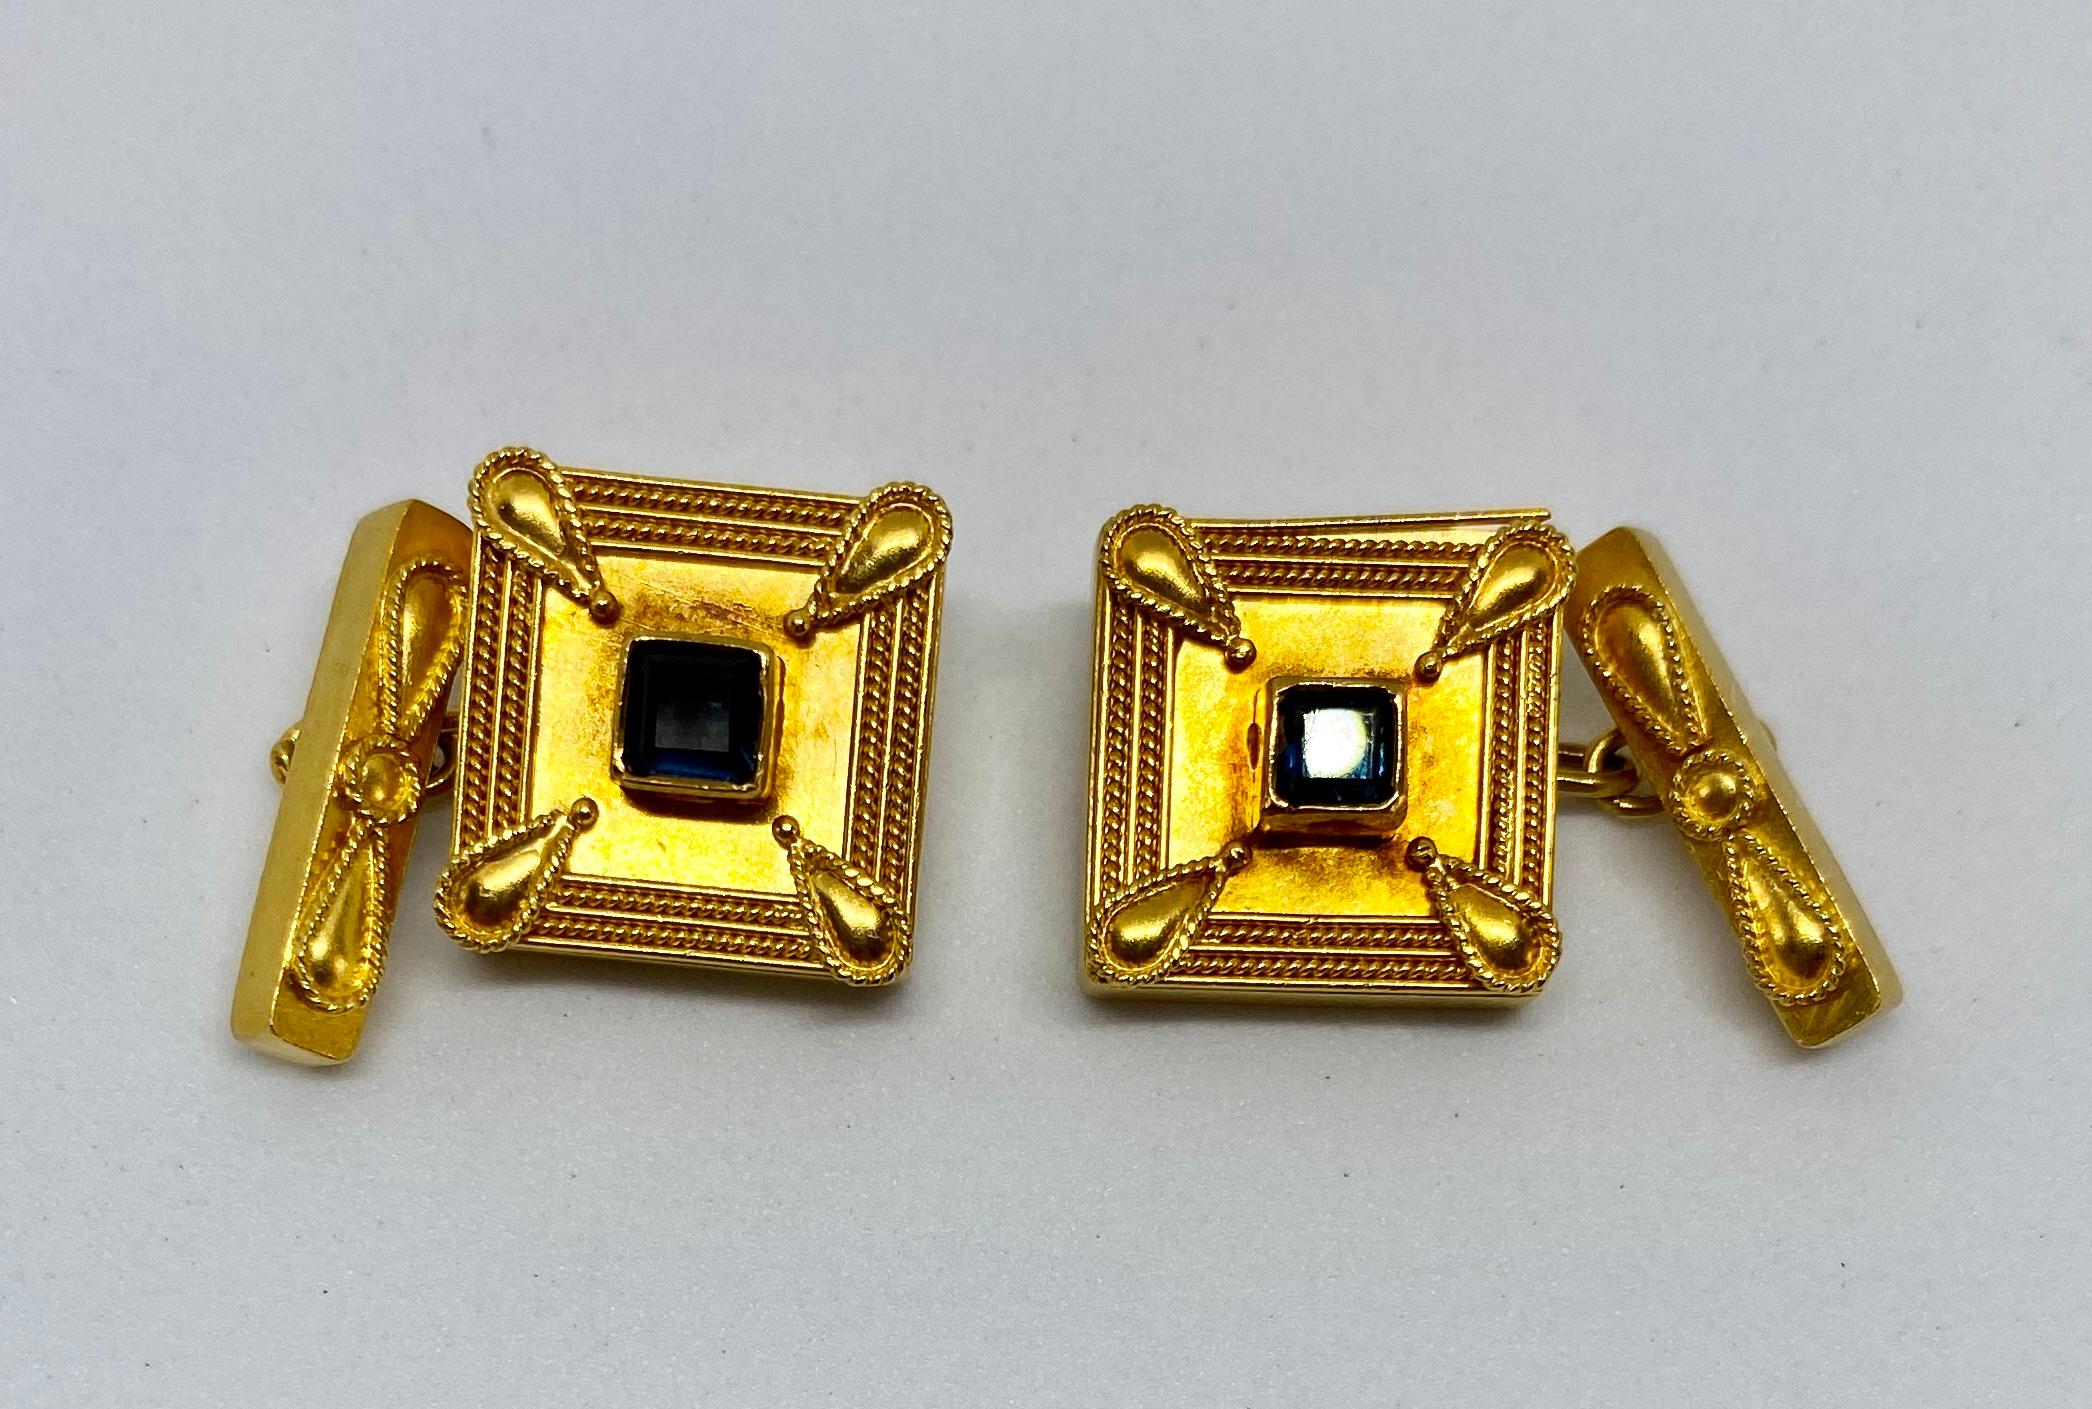 22 carat gold cufflinks